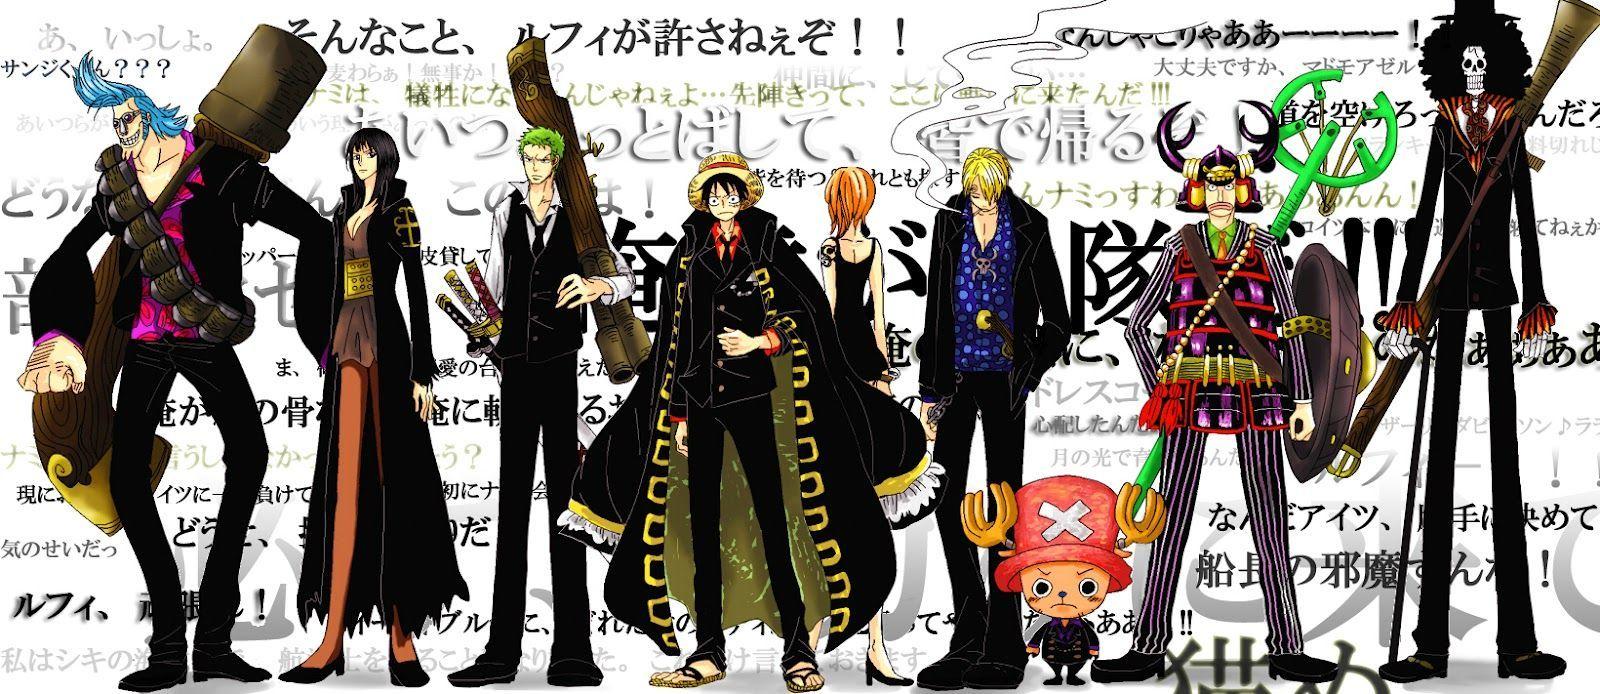 Strong World * - One Piece Wallpaper (34106727) - Fanpop